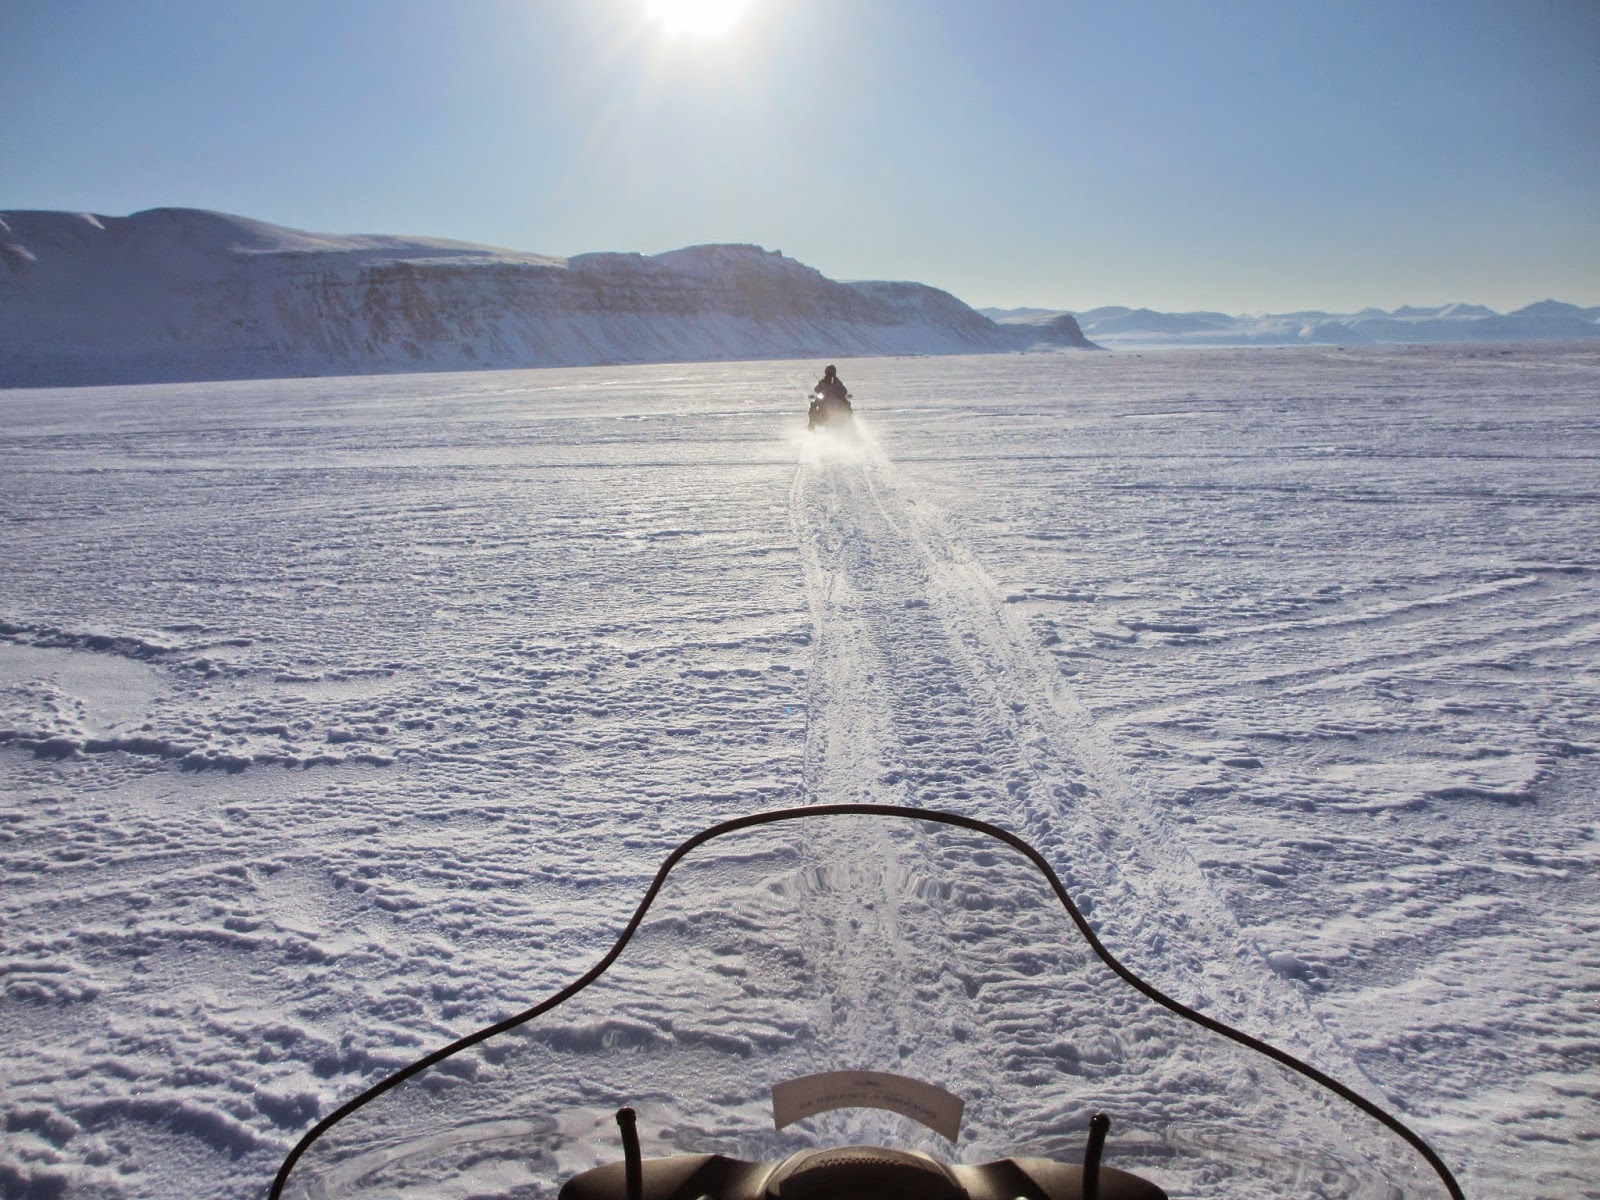 Expedição em MOTA DE NEVE a Tempelfjorden nas ilhas Svalbard | Noruega